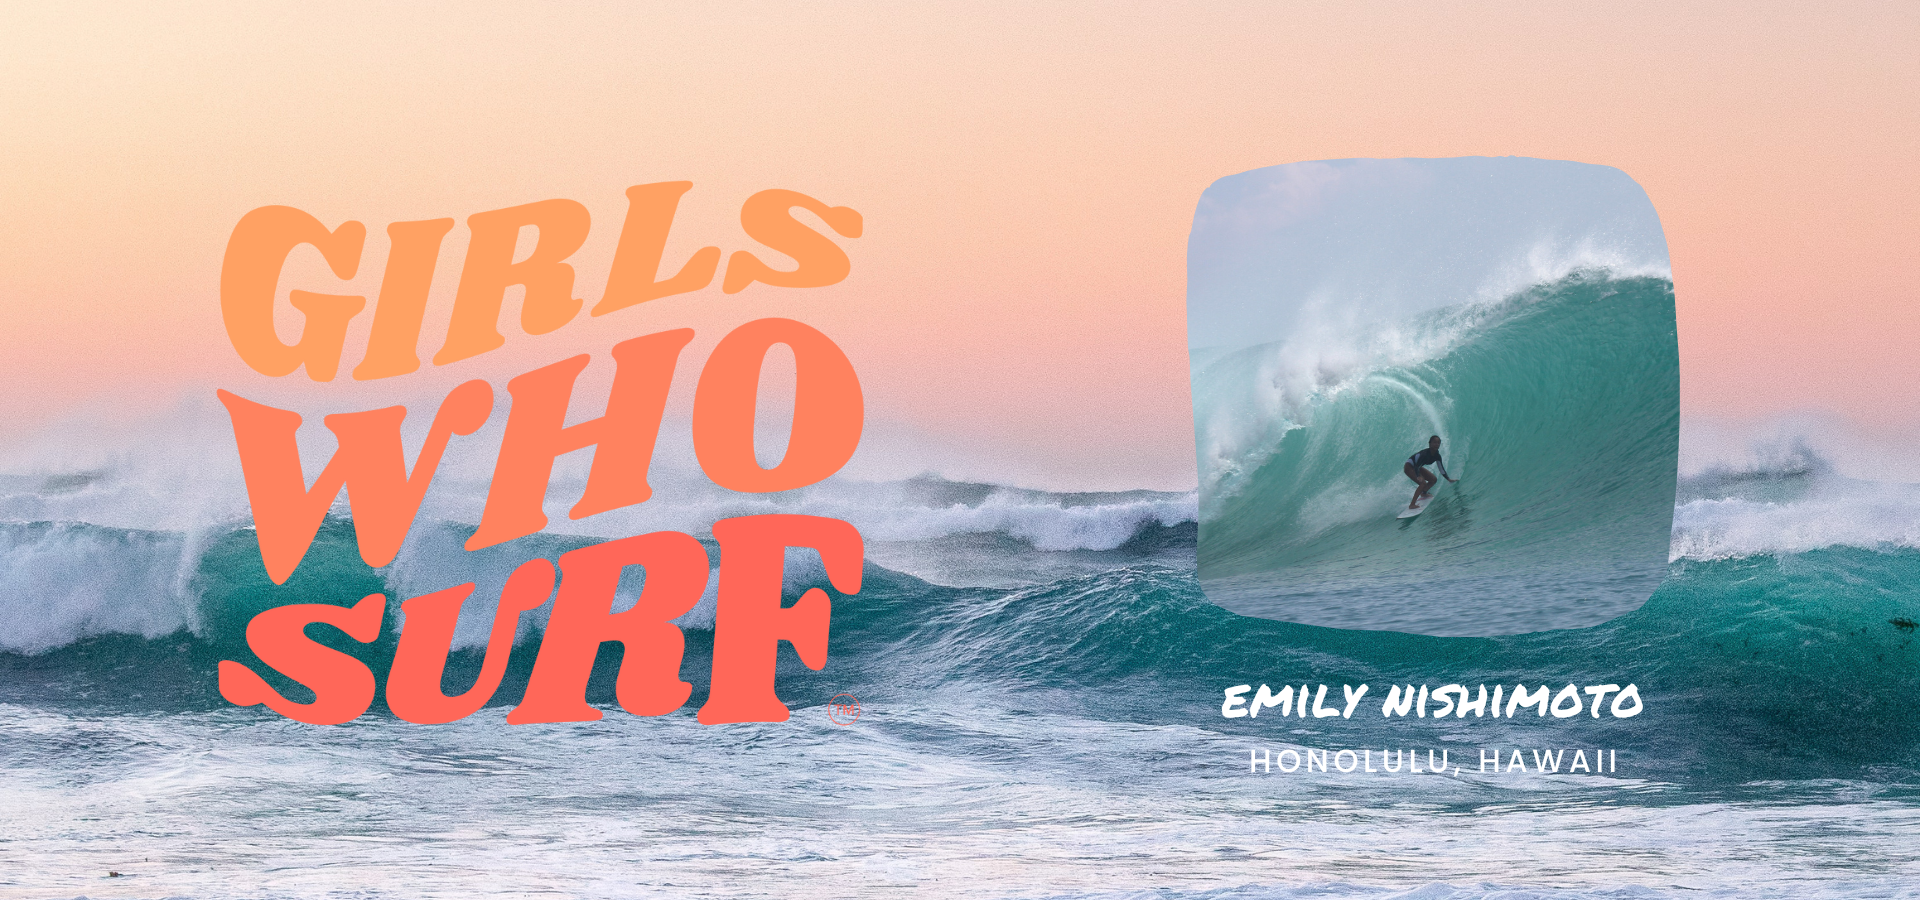 Girls Who Surf: Emily Nishimoto